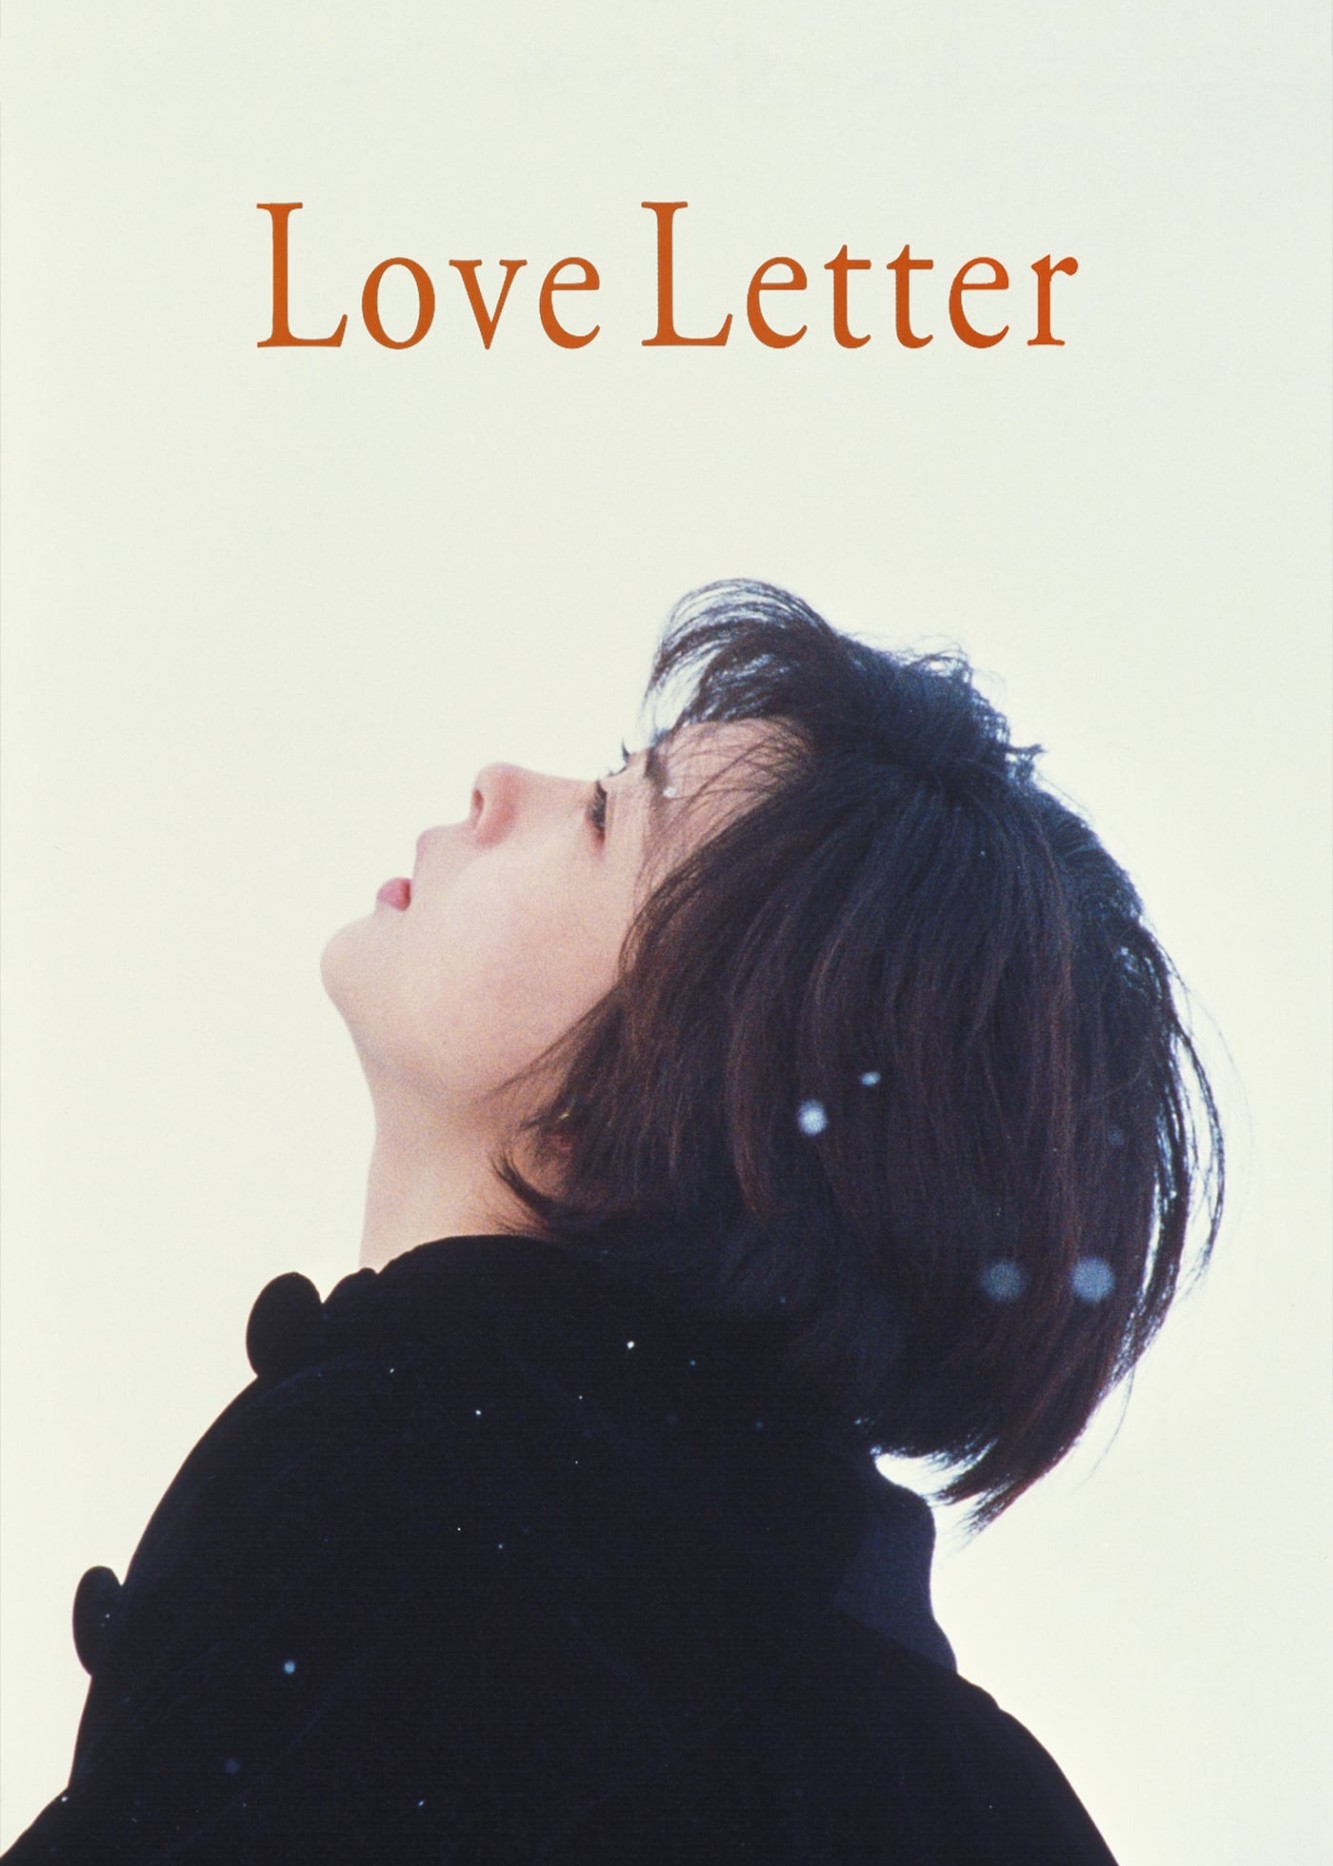 Love Letter 2015